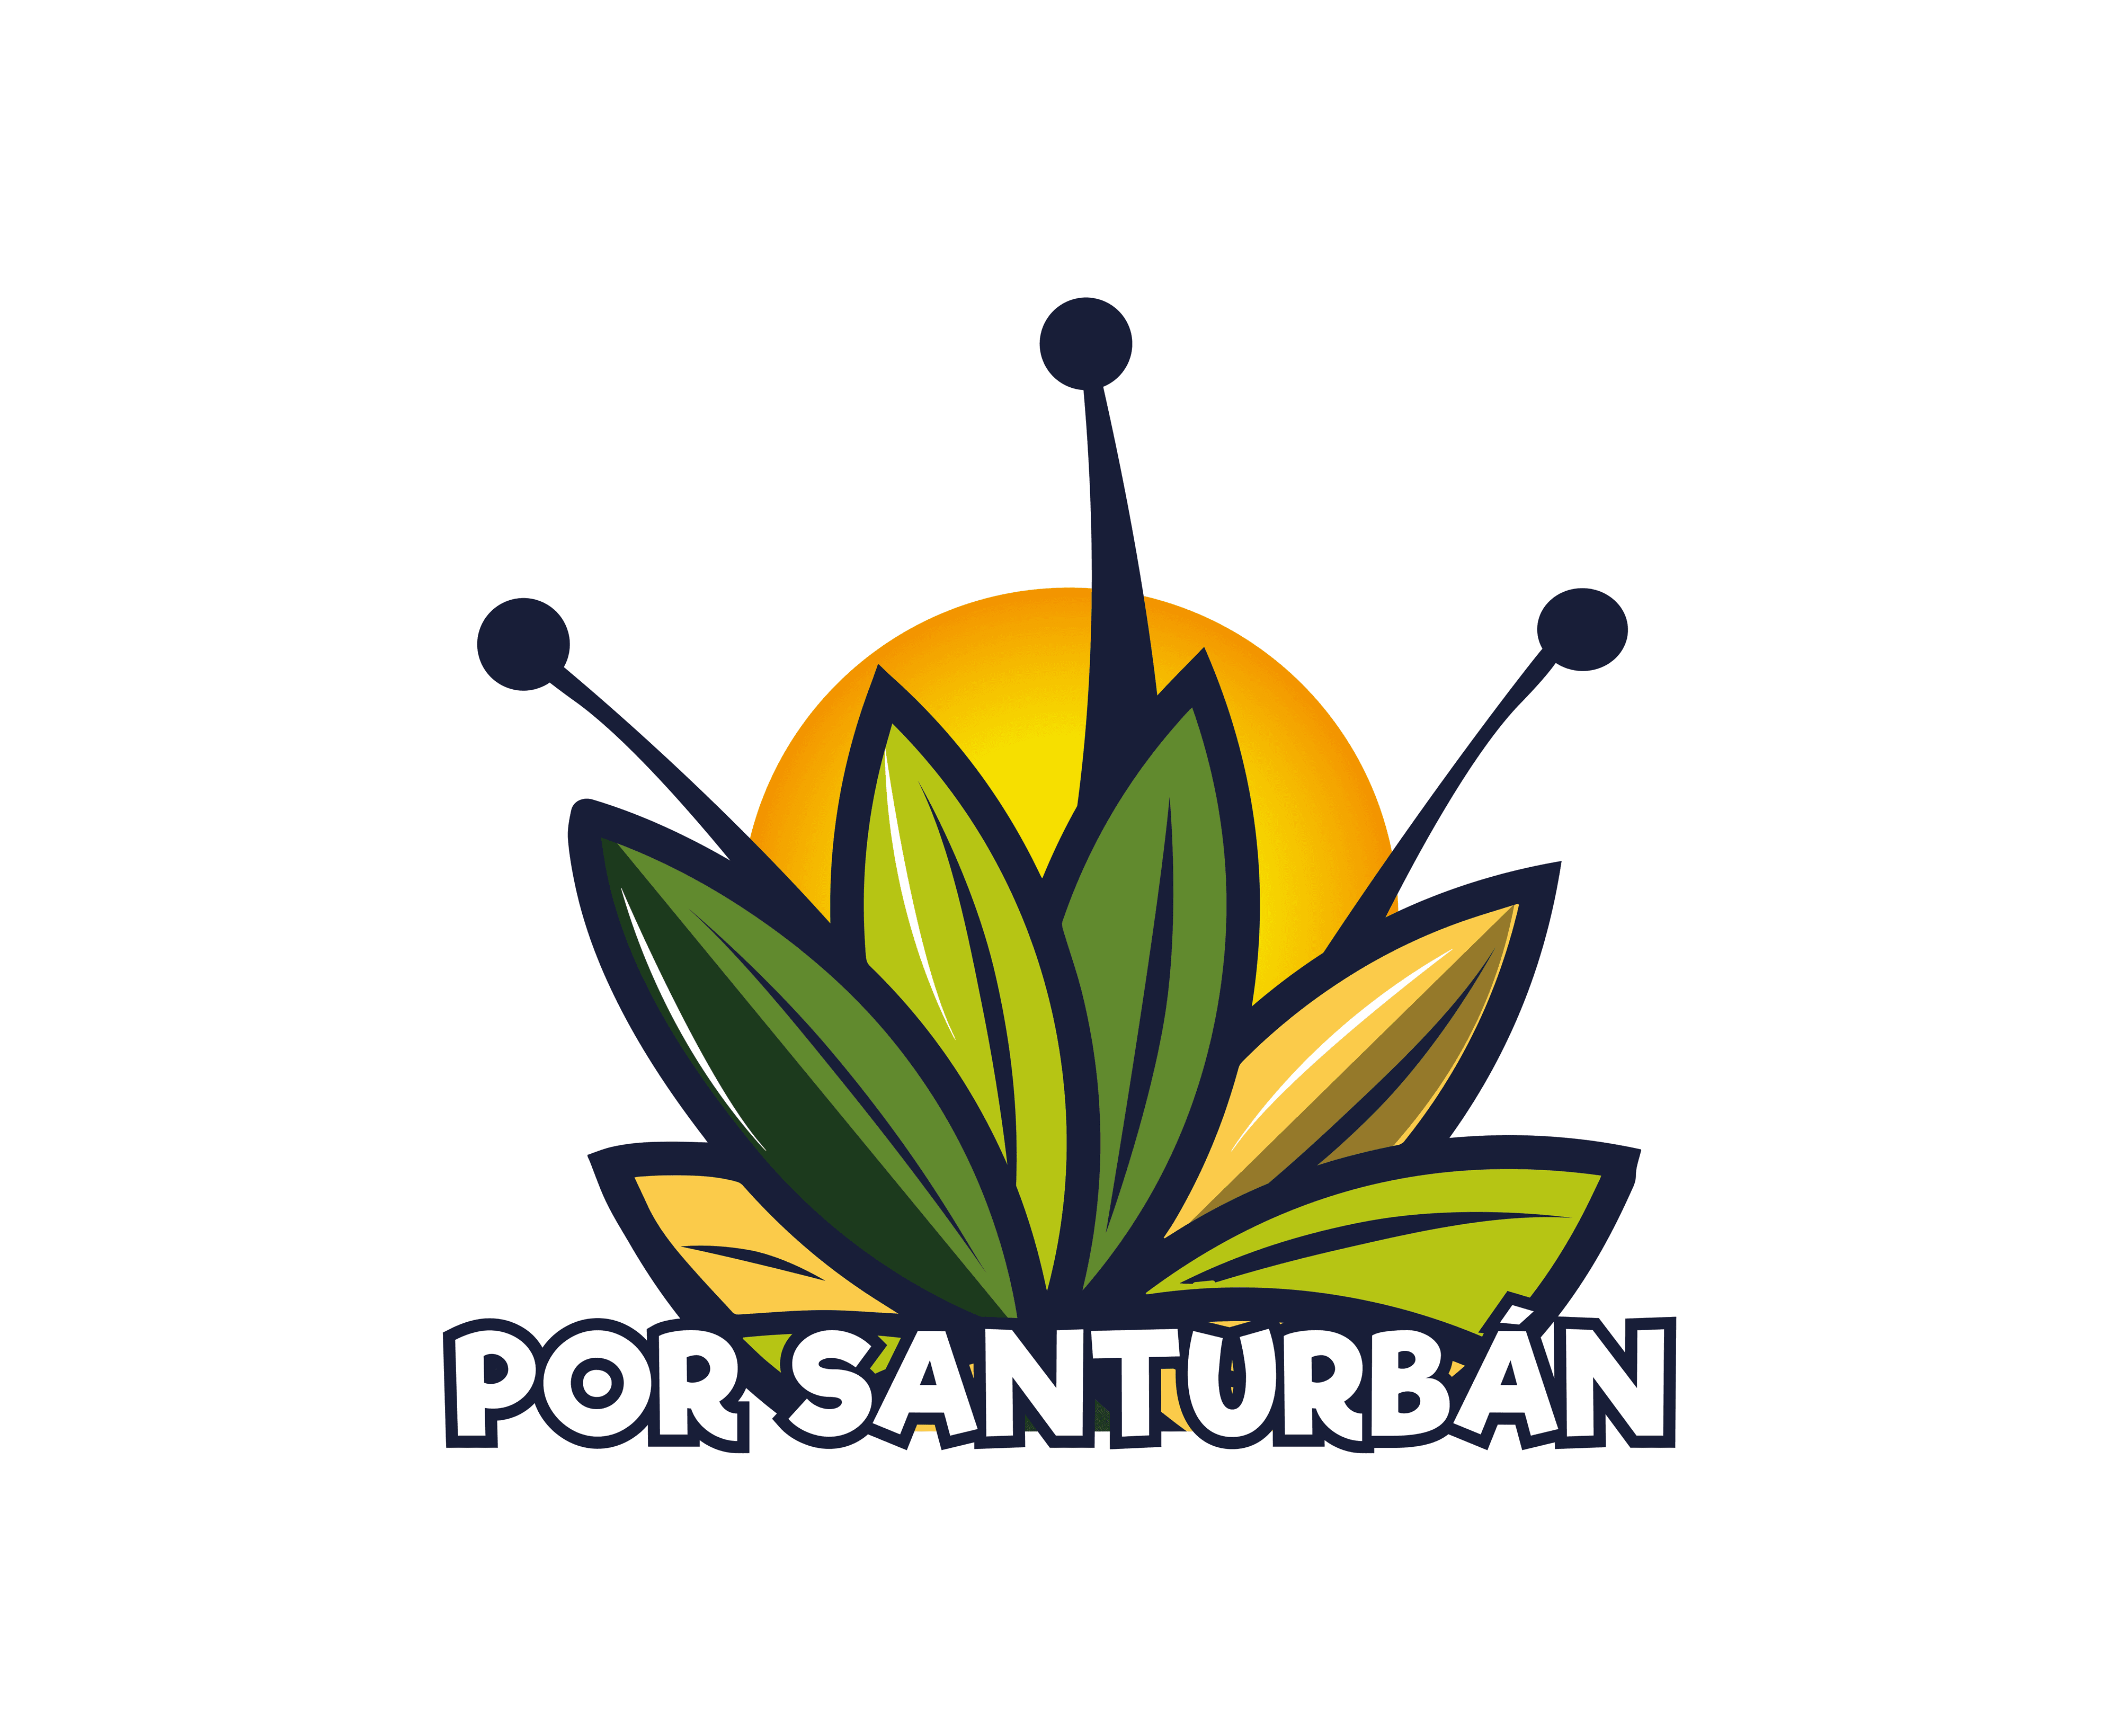 PorSanturban